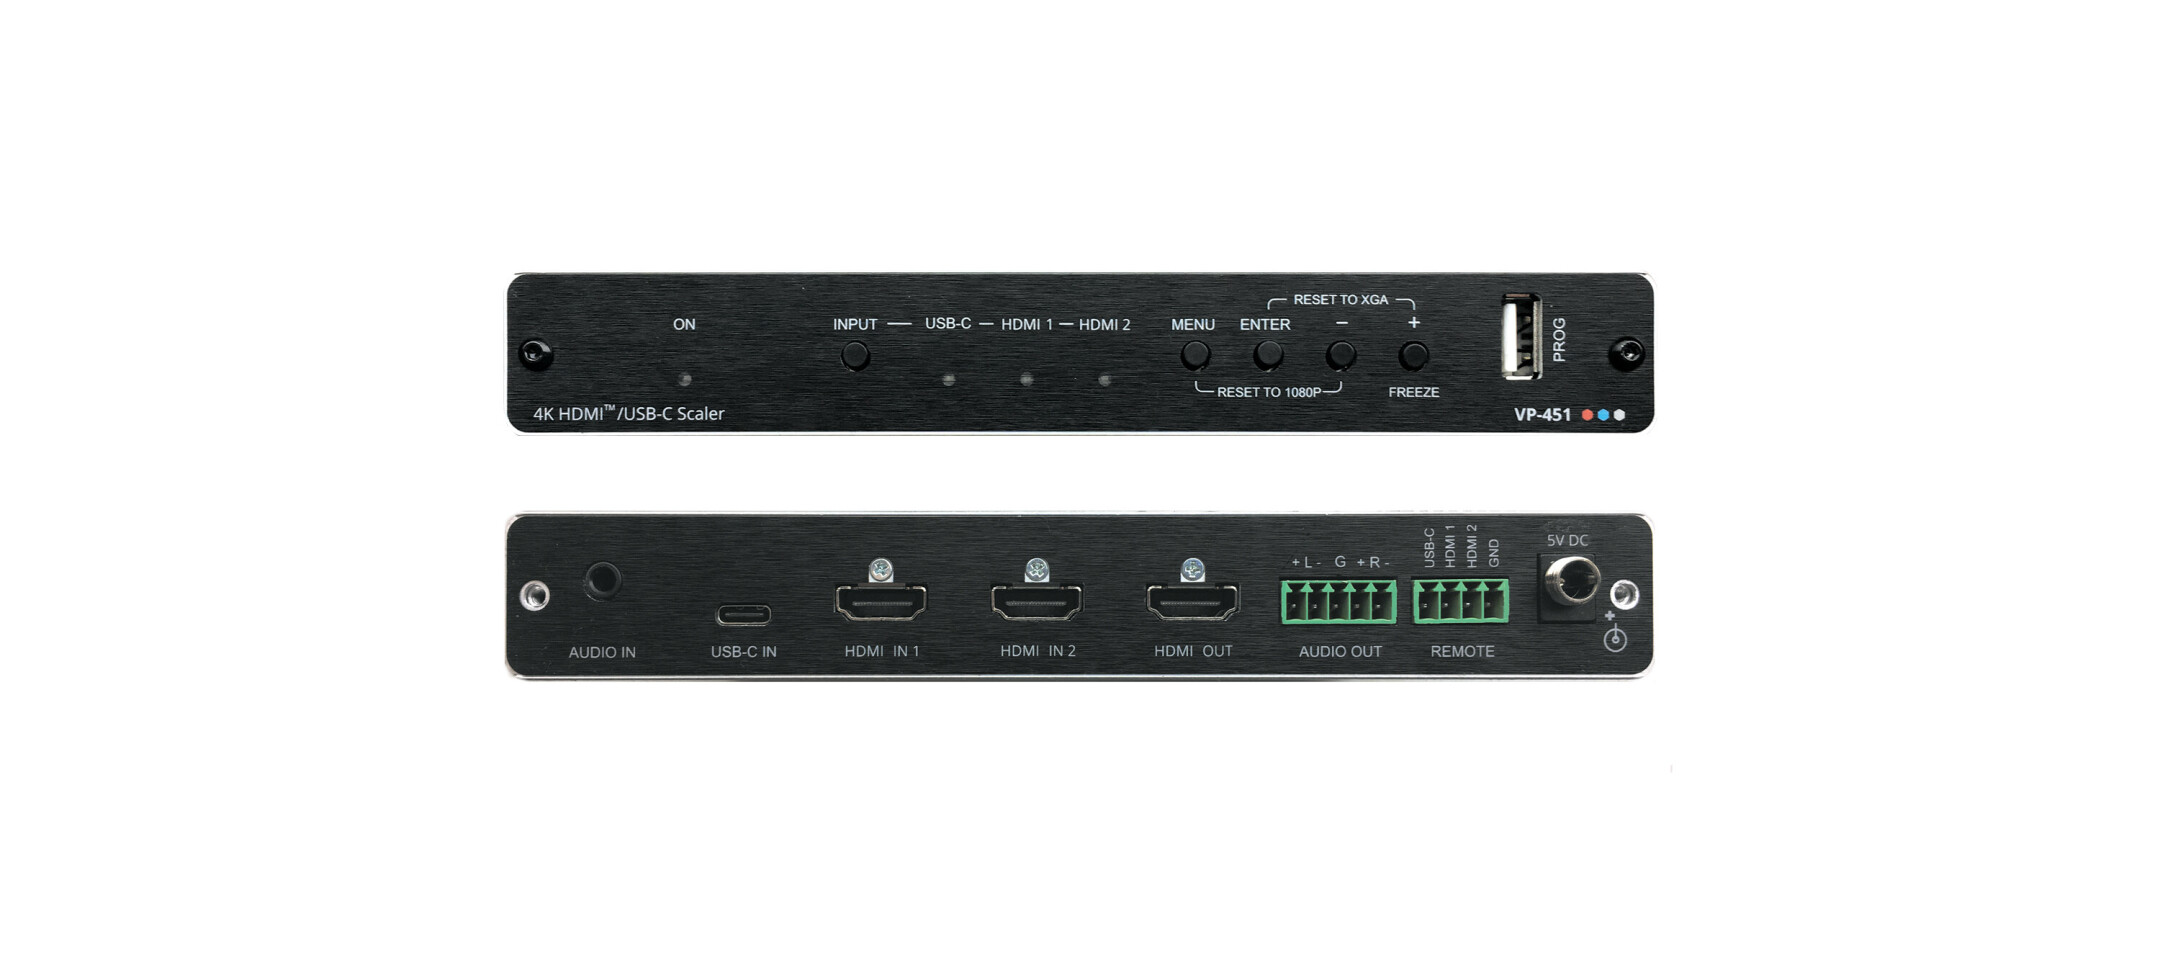 Kramer-VP-451-Digital-Scaler-mit-HDMI-und-USB-C-Eingangen